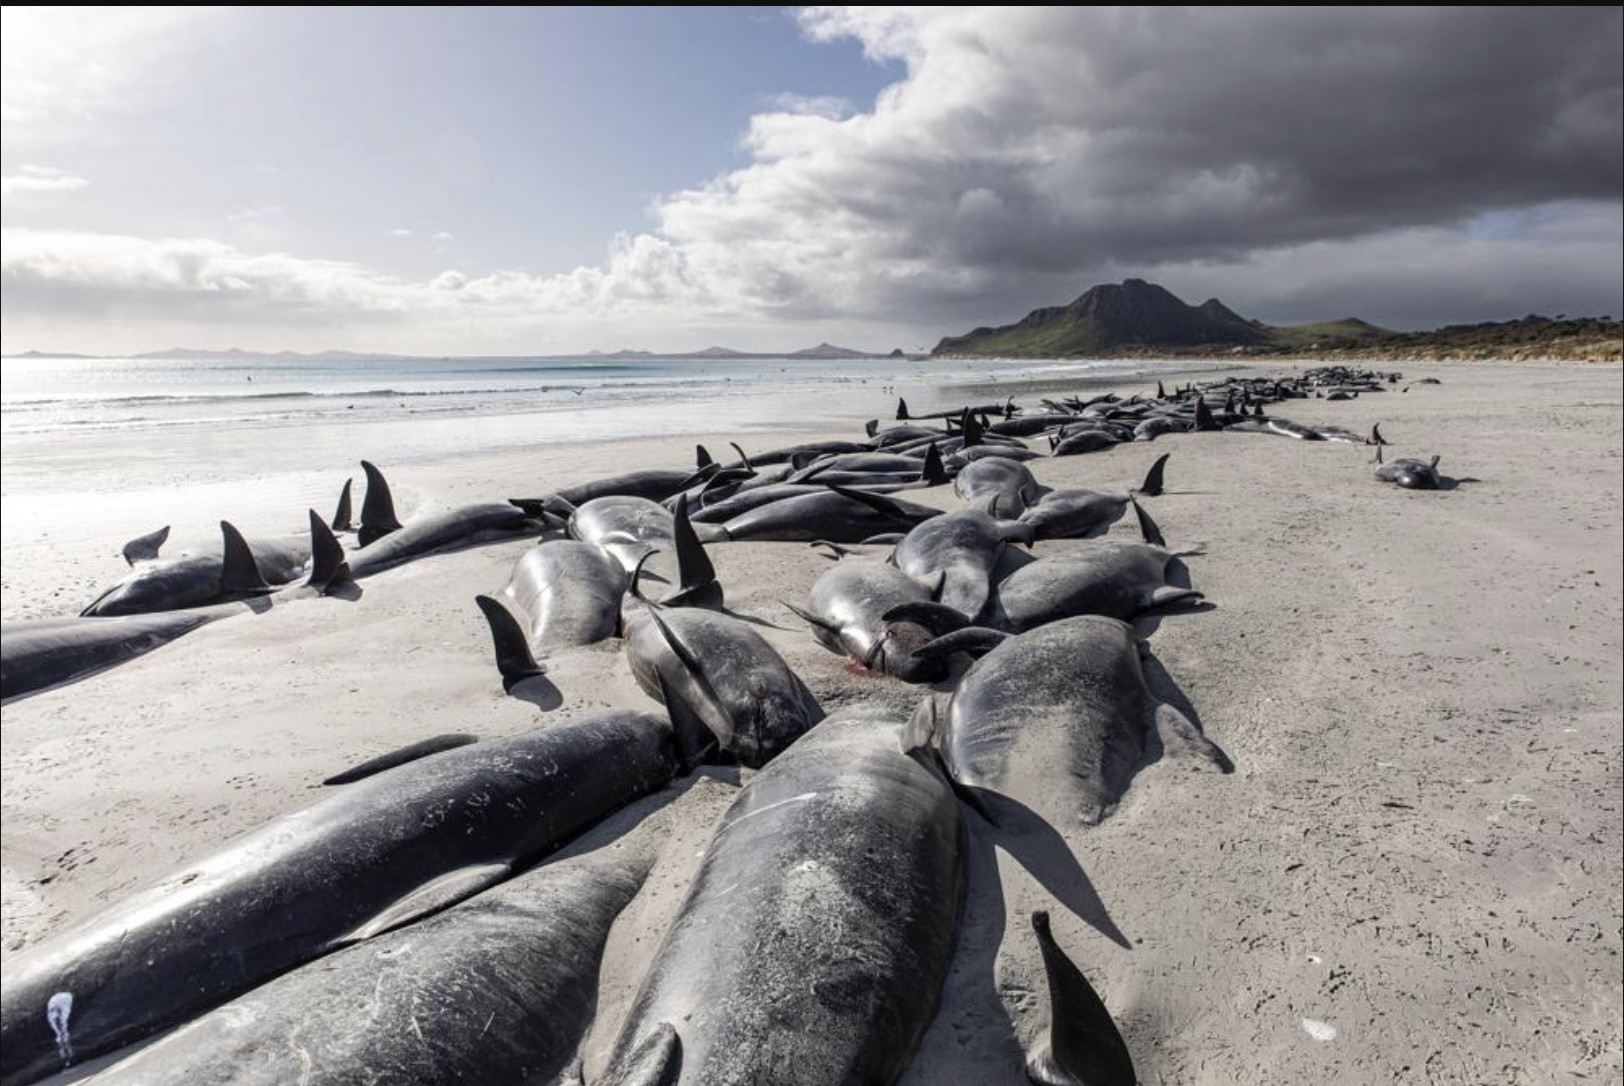 Hình ảnh gần 500 con cá voi chết la liệt trên bãi biển New Zealand